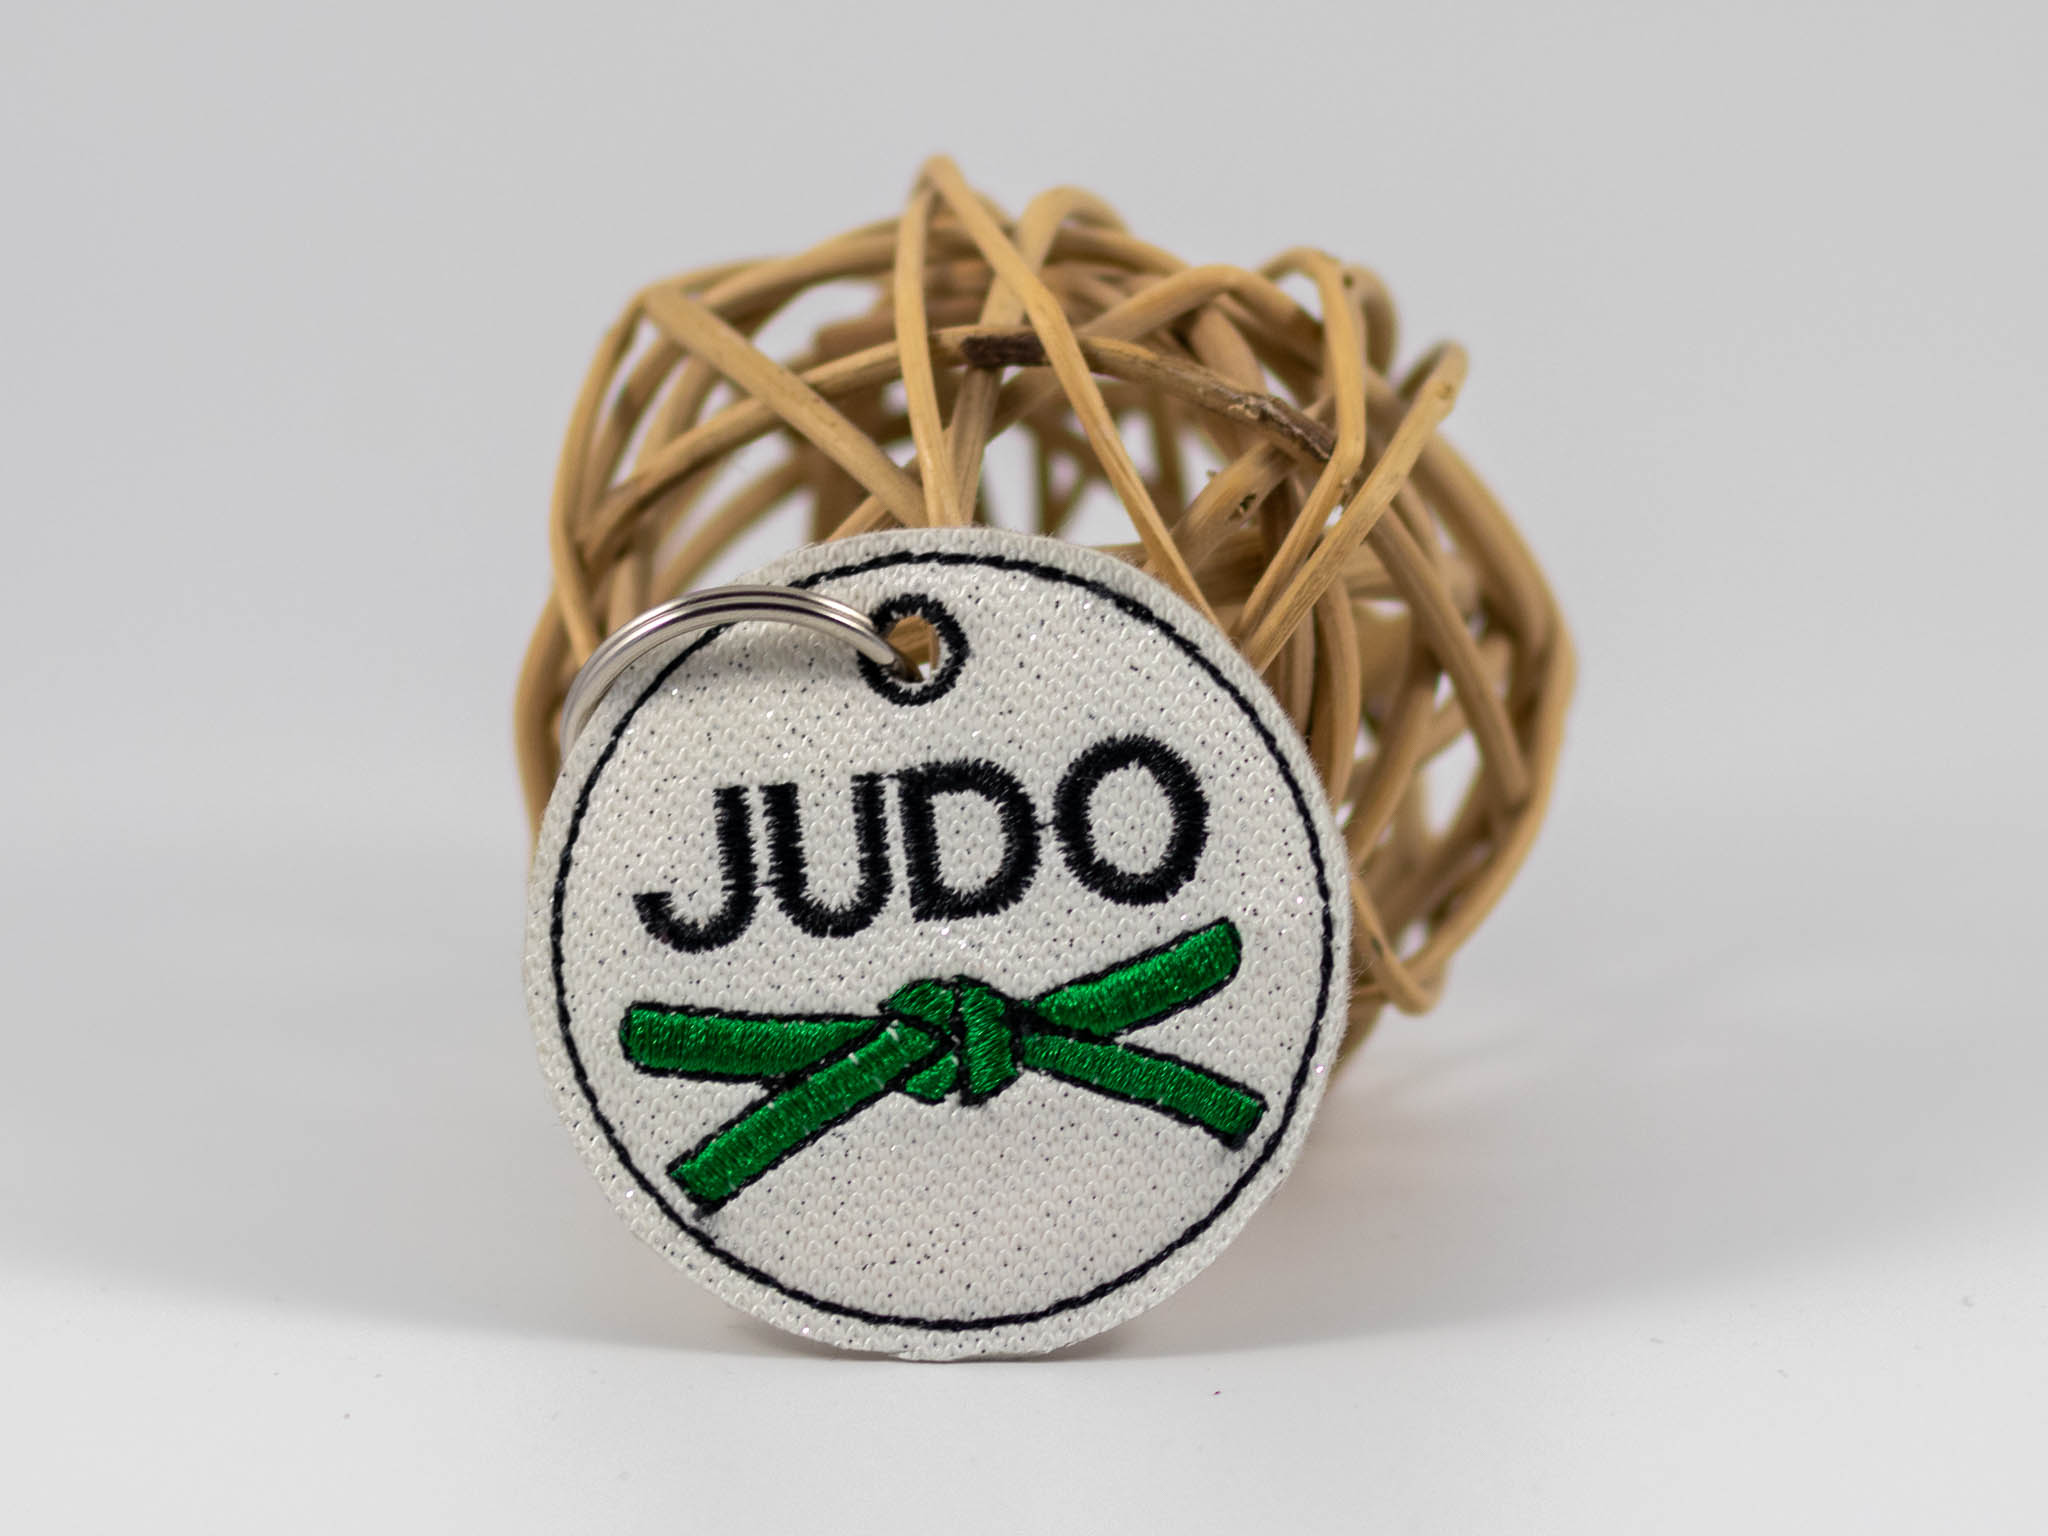 Kampfsportgürtel mit Schriftzug "Judo"